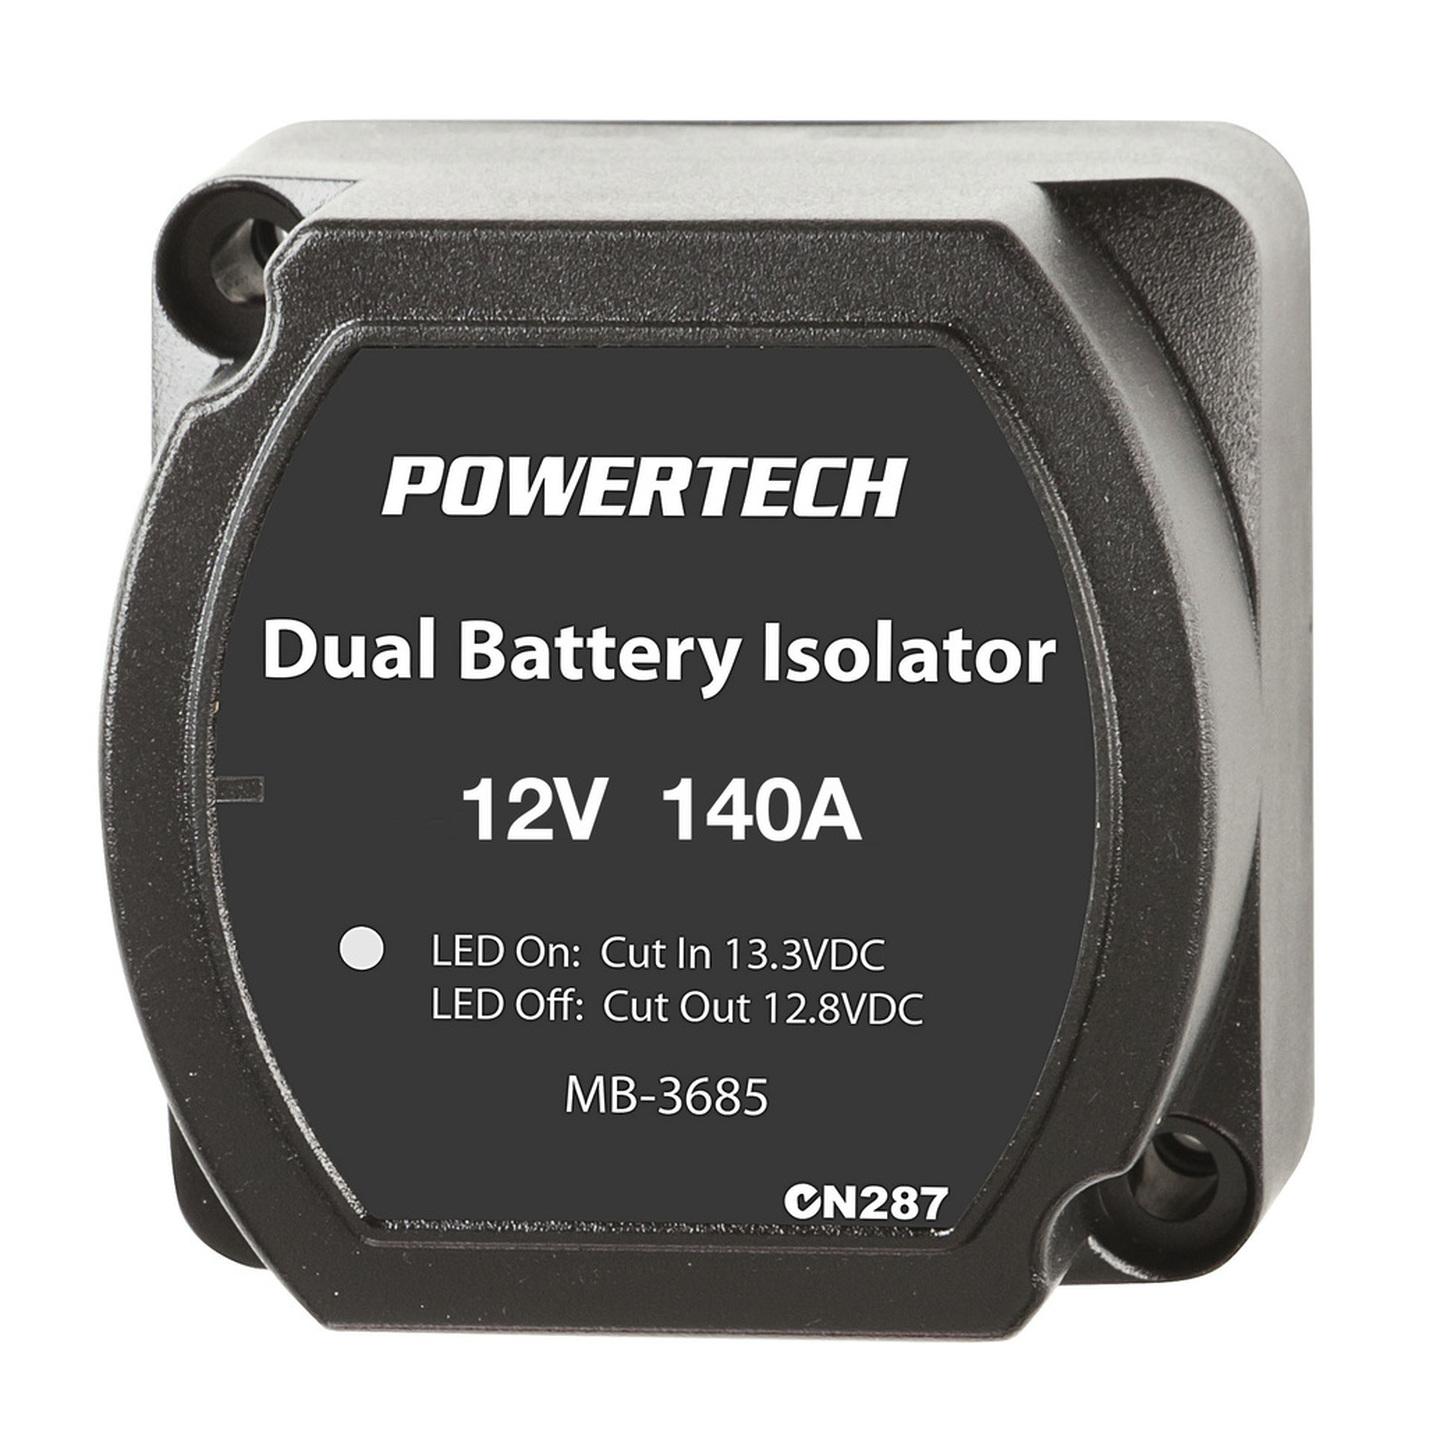 Powertech 140A Dual Battery Isolator VSR